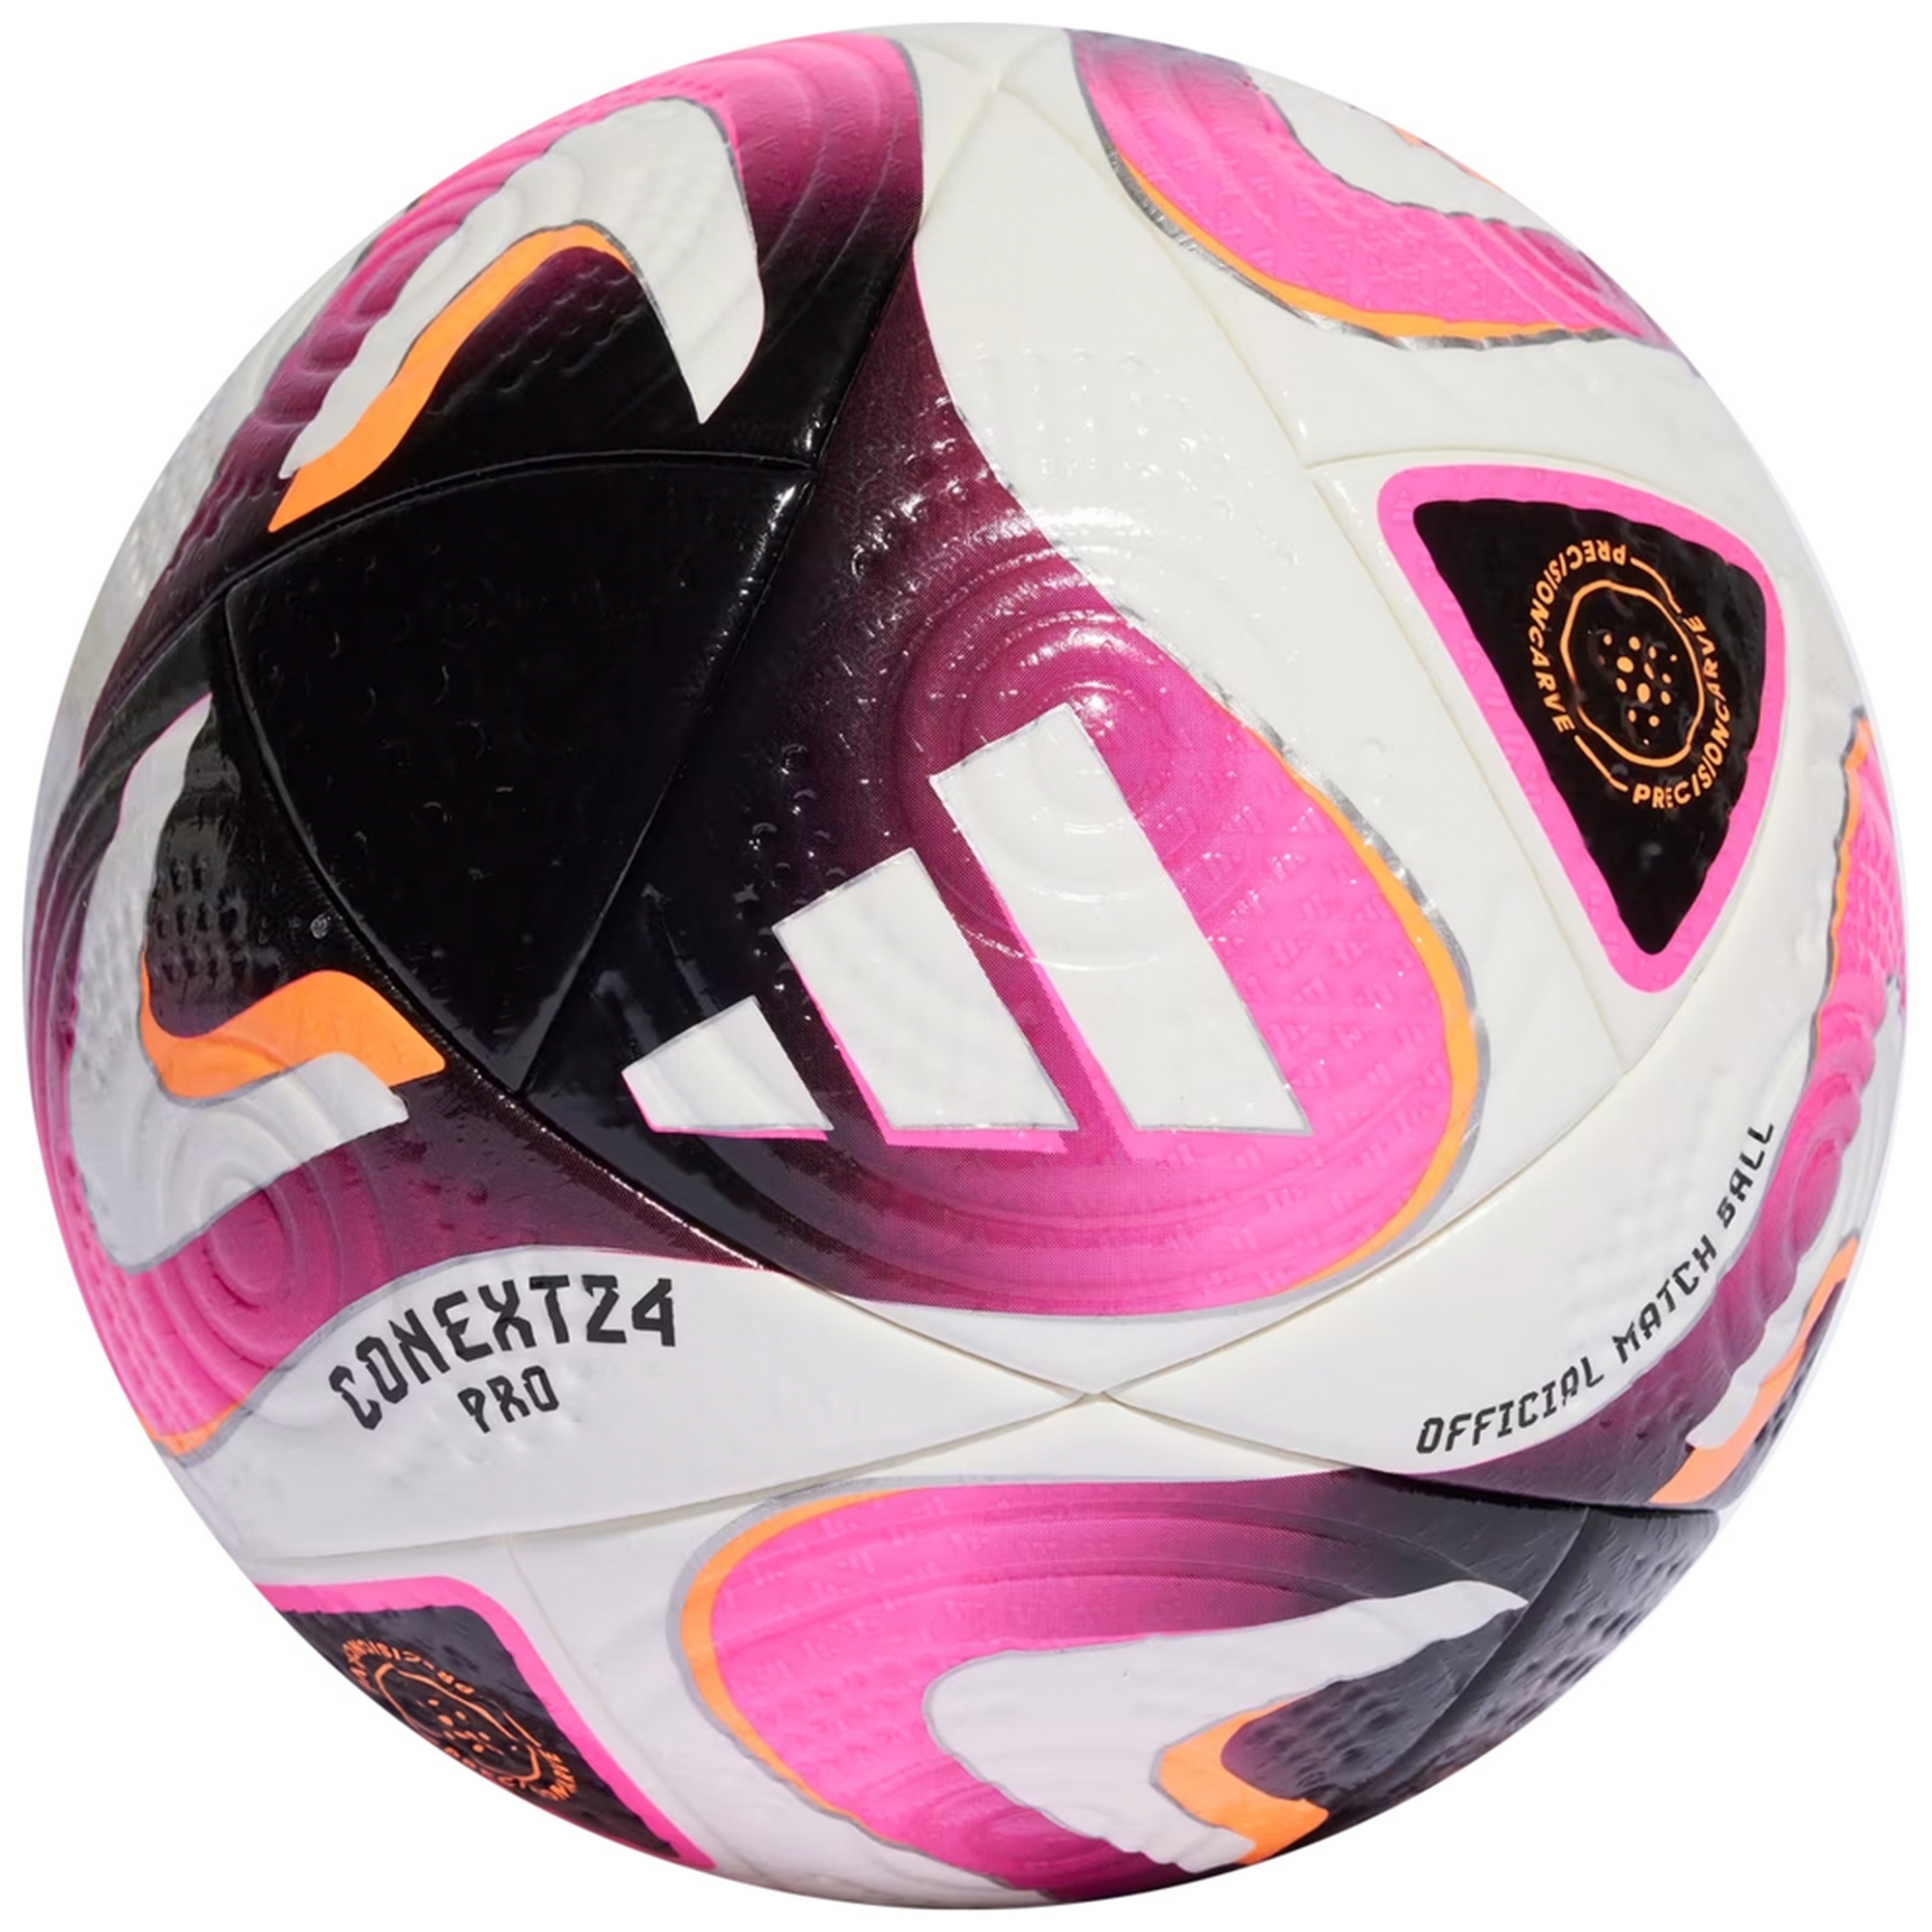 Мяч футбольный Adidas Conext 24 PRO, FIFA Quality Pro IP1616 р.5 2000_2000